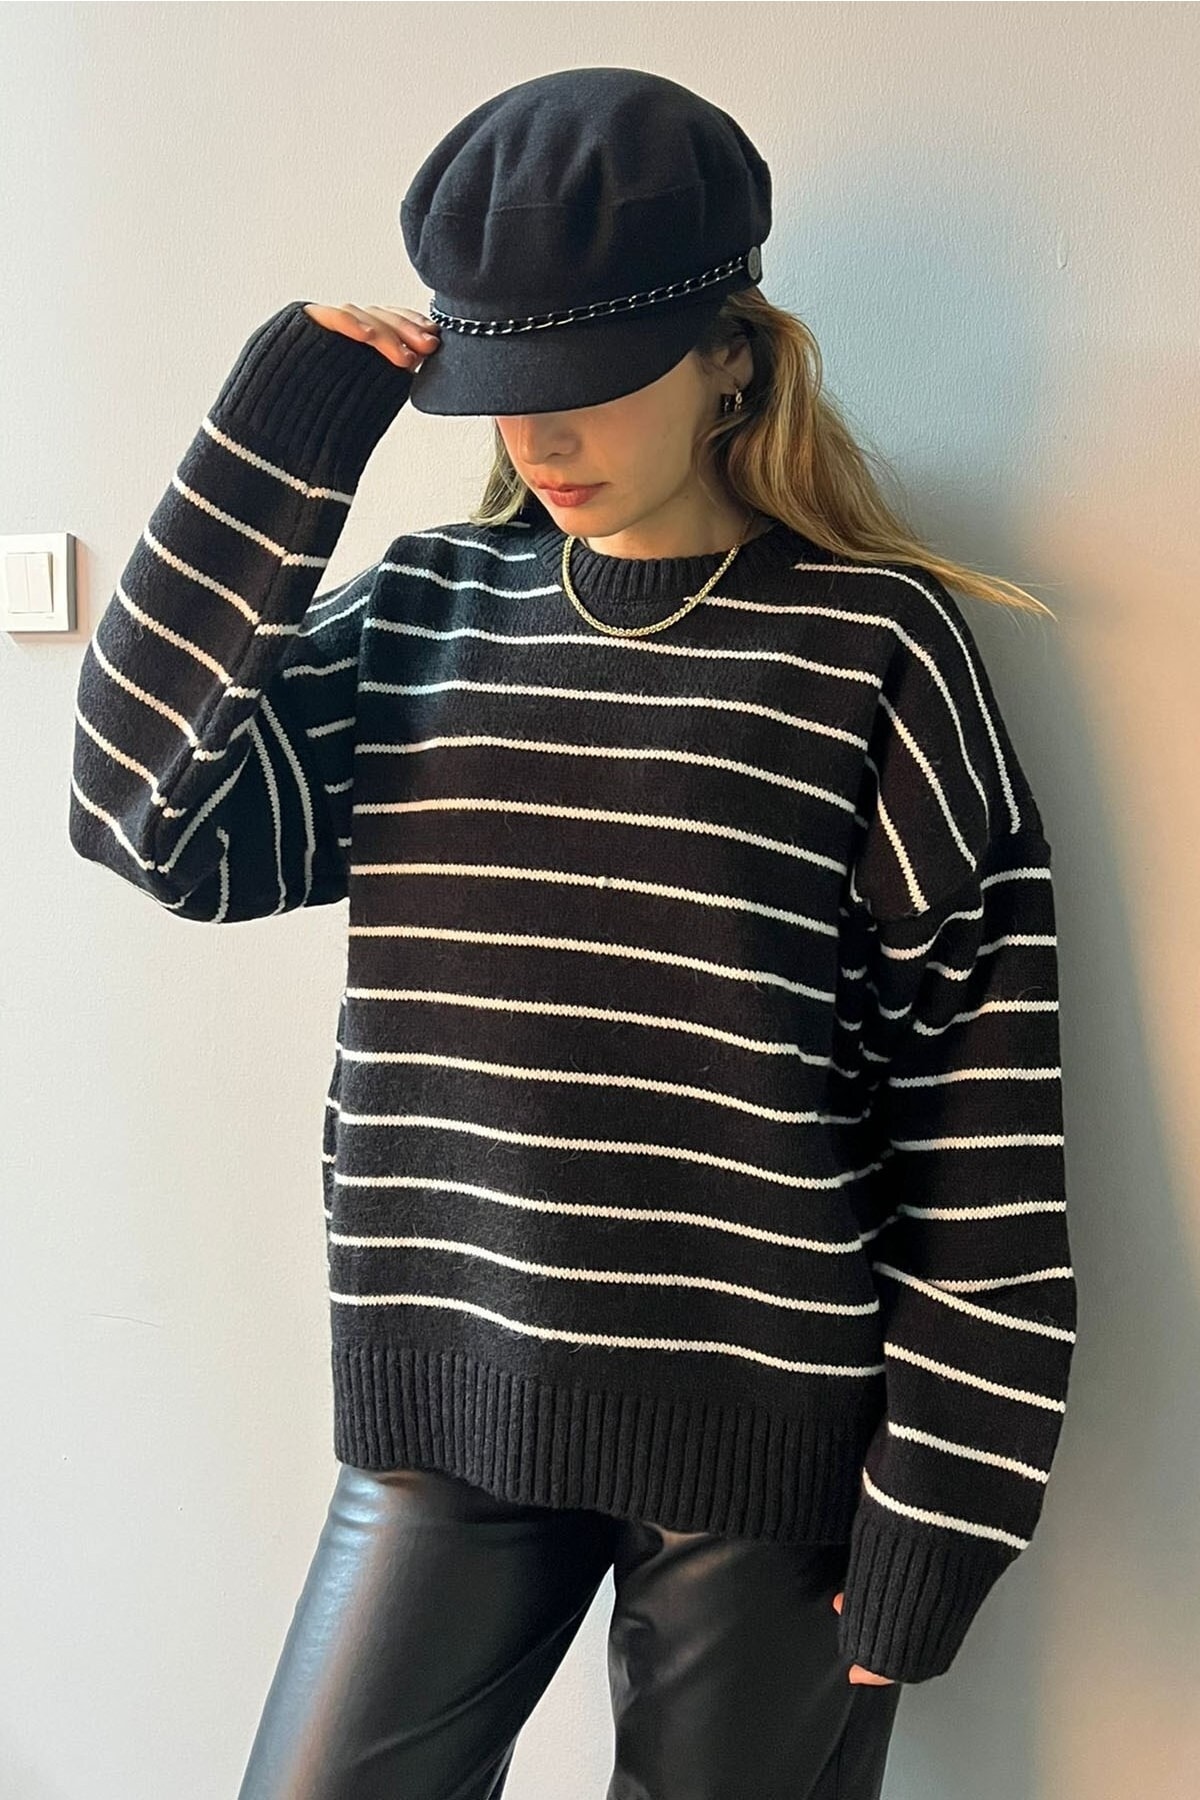 Madmext Women's Black Striped Knitwear Sweater